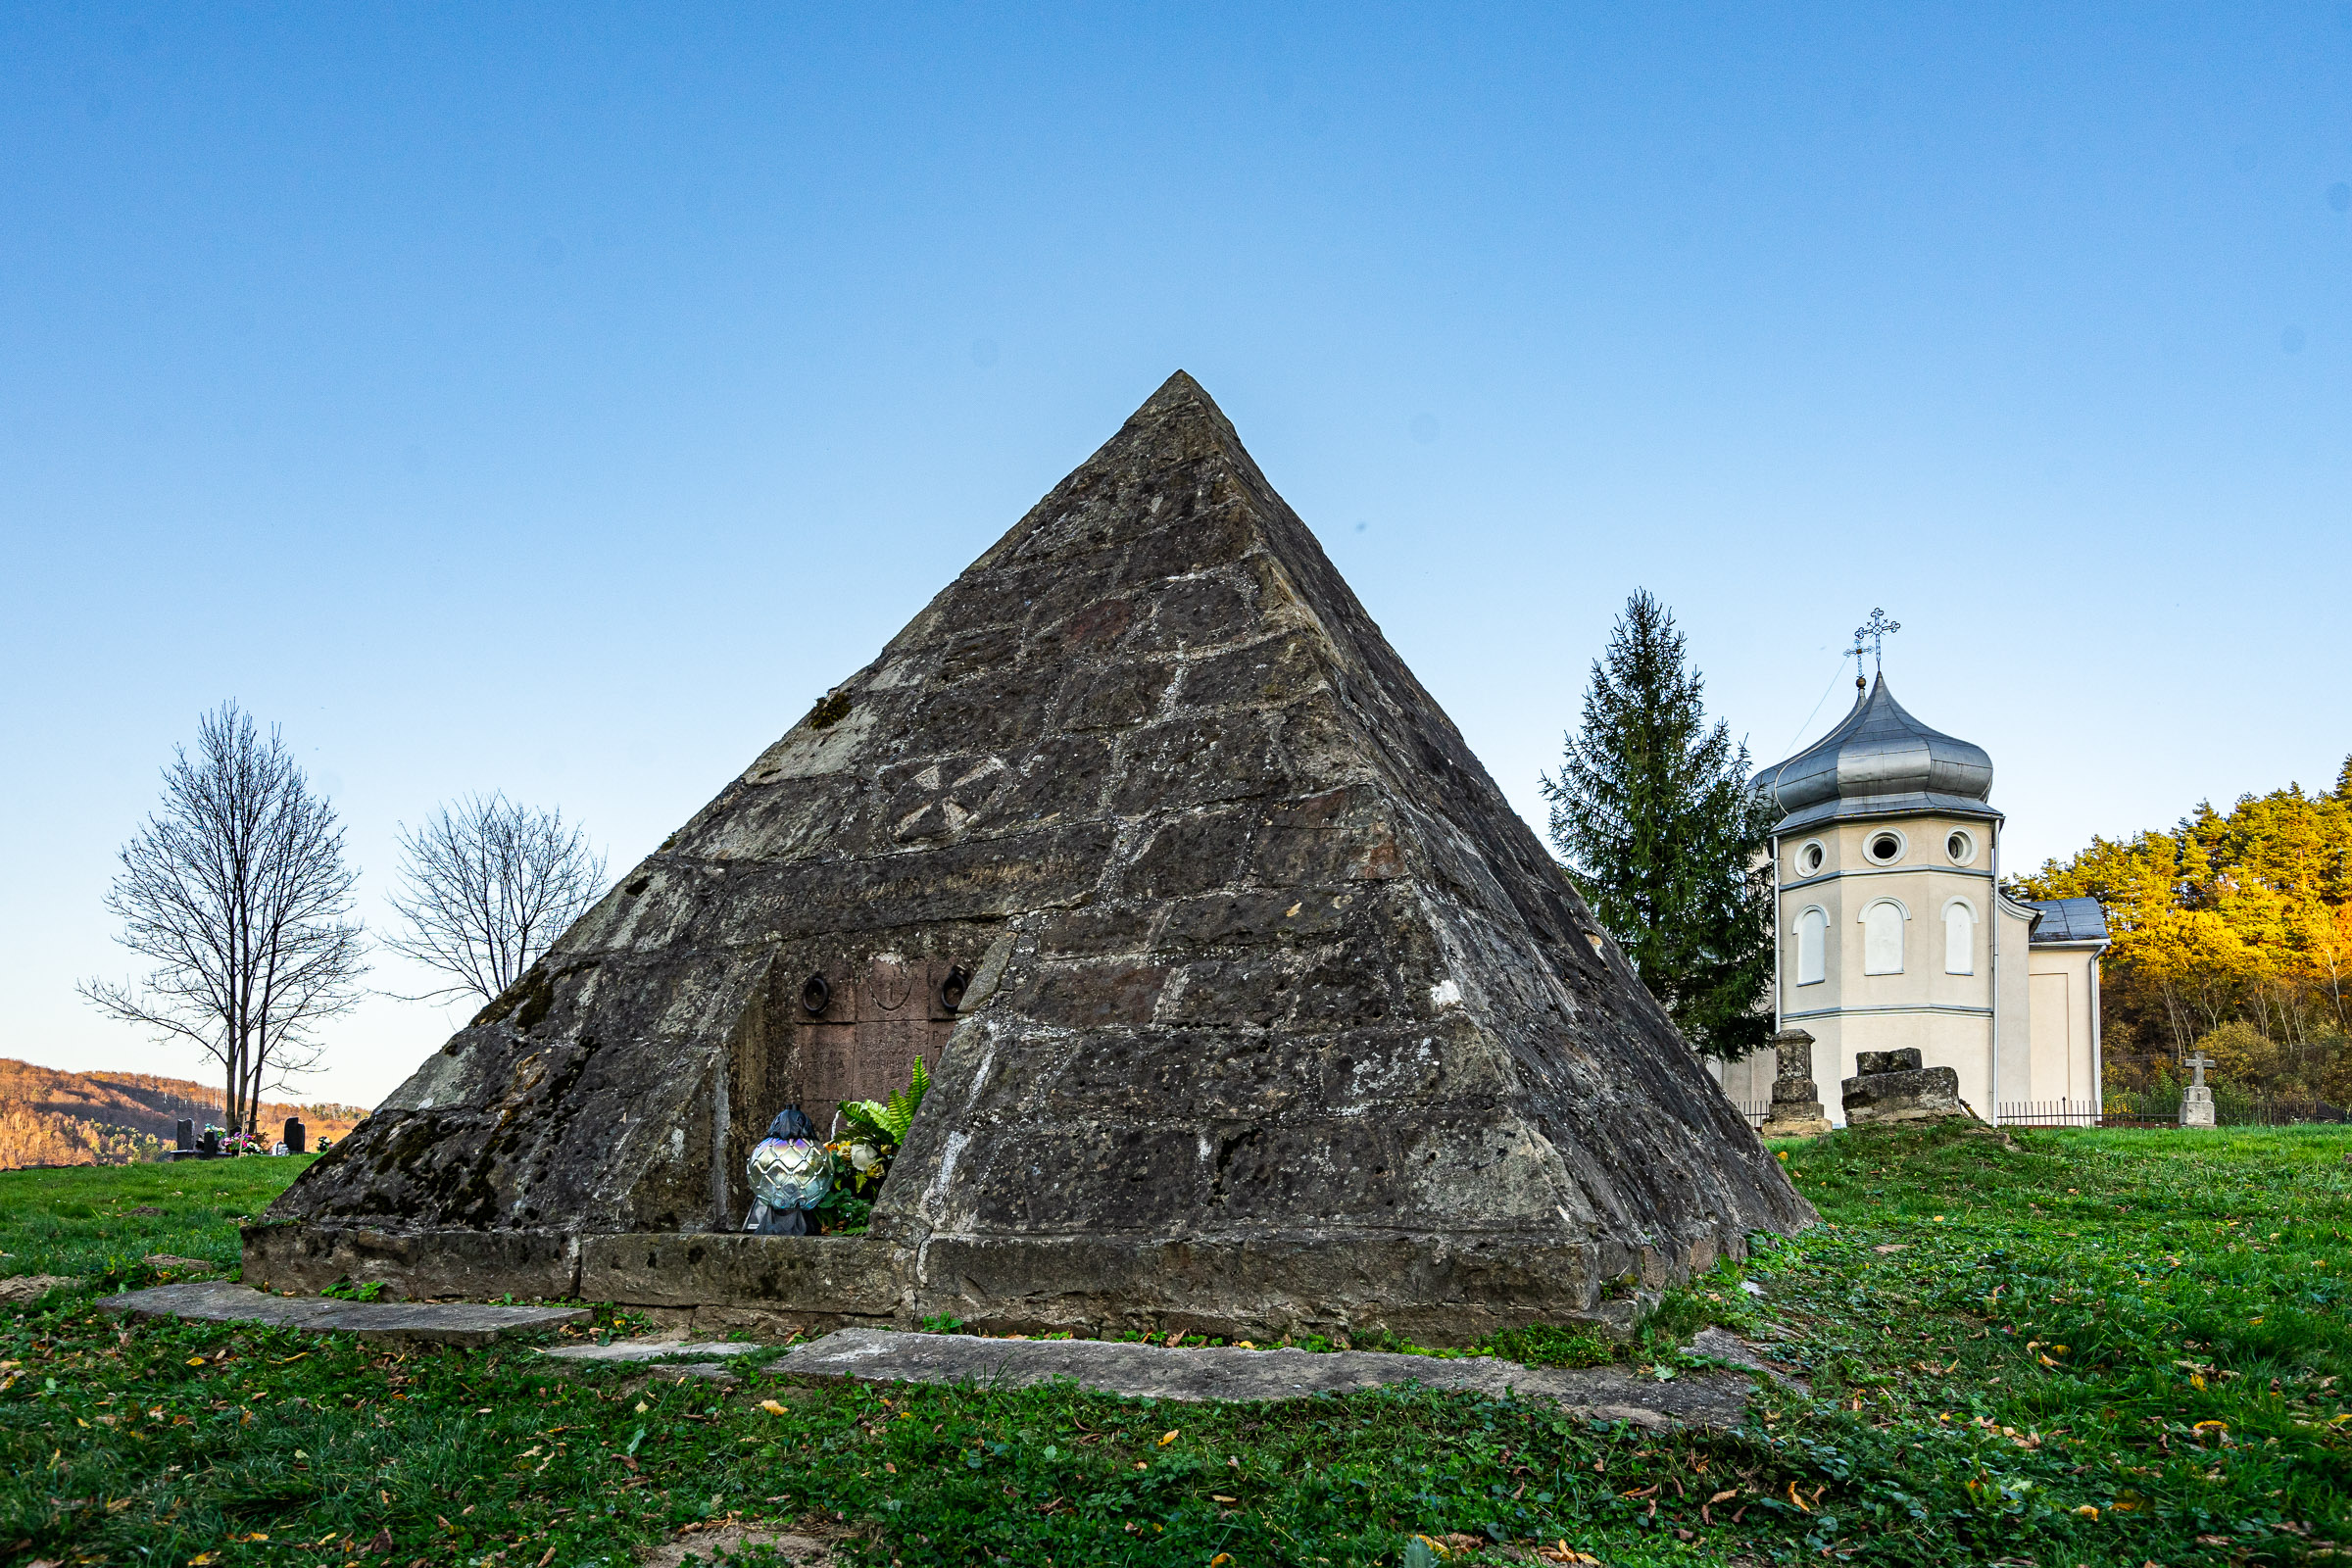 Kamienny grobowiec w kształcie piramidy. W tle budynek murowanej cerkwi.